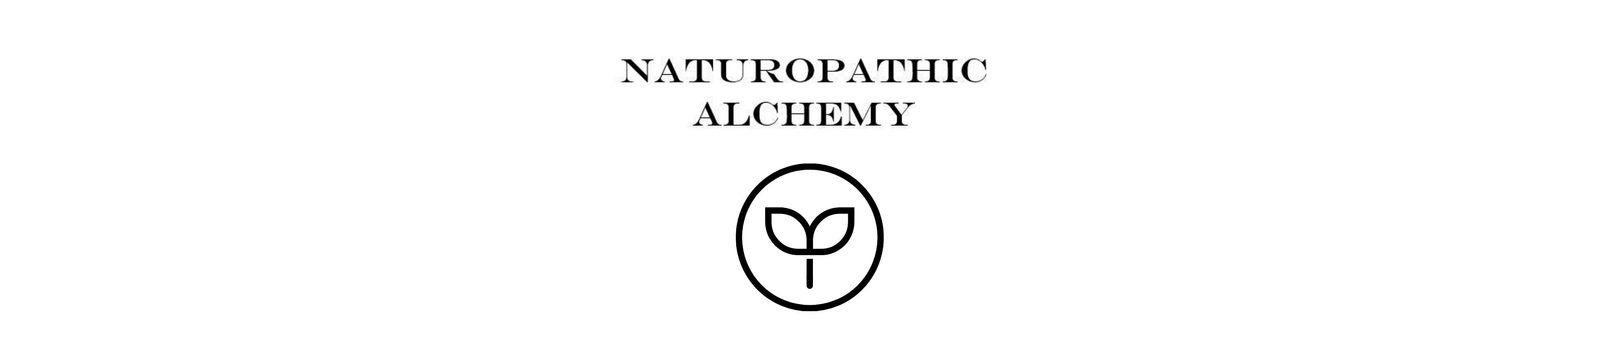 Naturopathic Alchemy